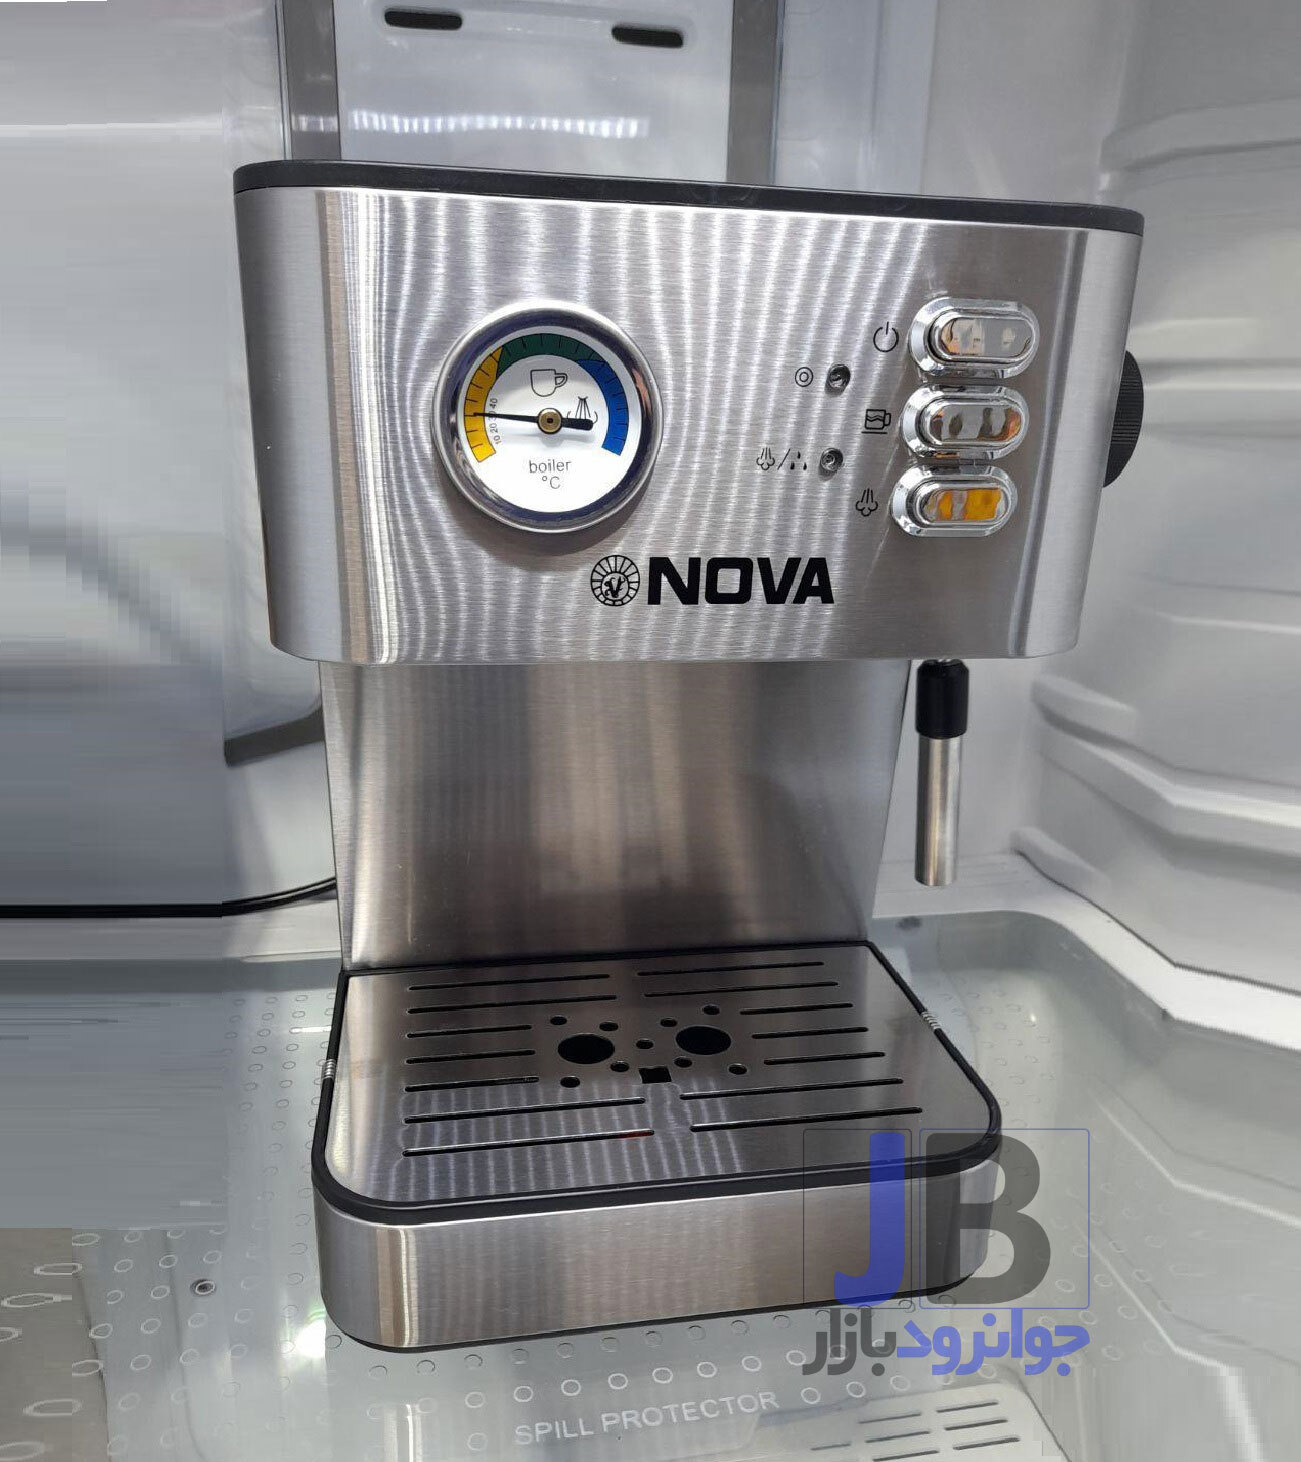  اسپرسوساز برند نوا فشار 20 بار 1050 وات مدل NOWA 187 